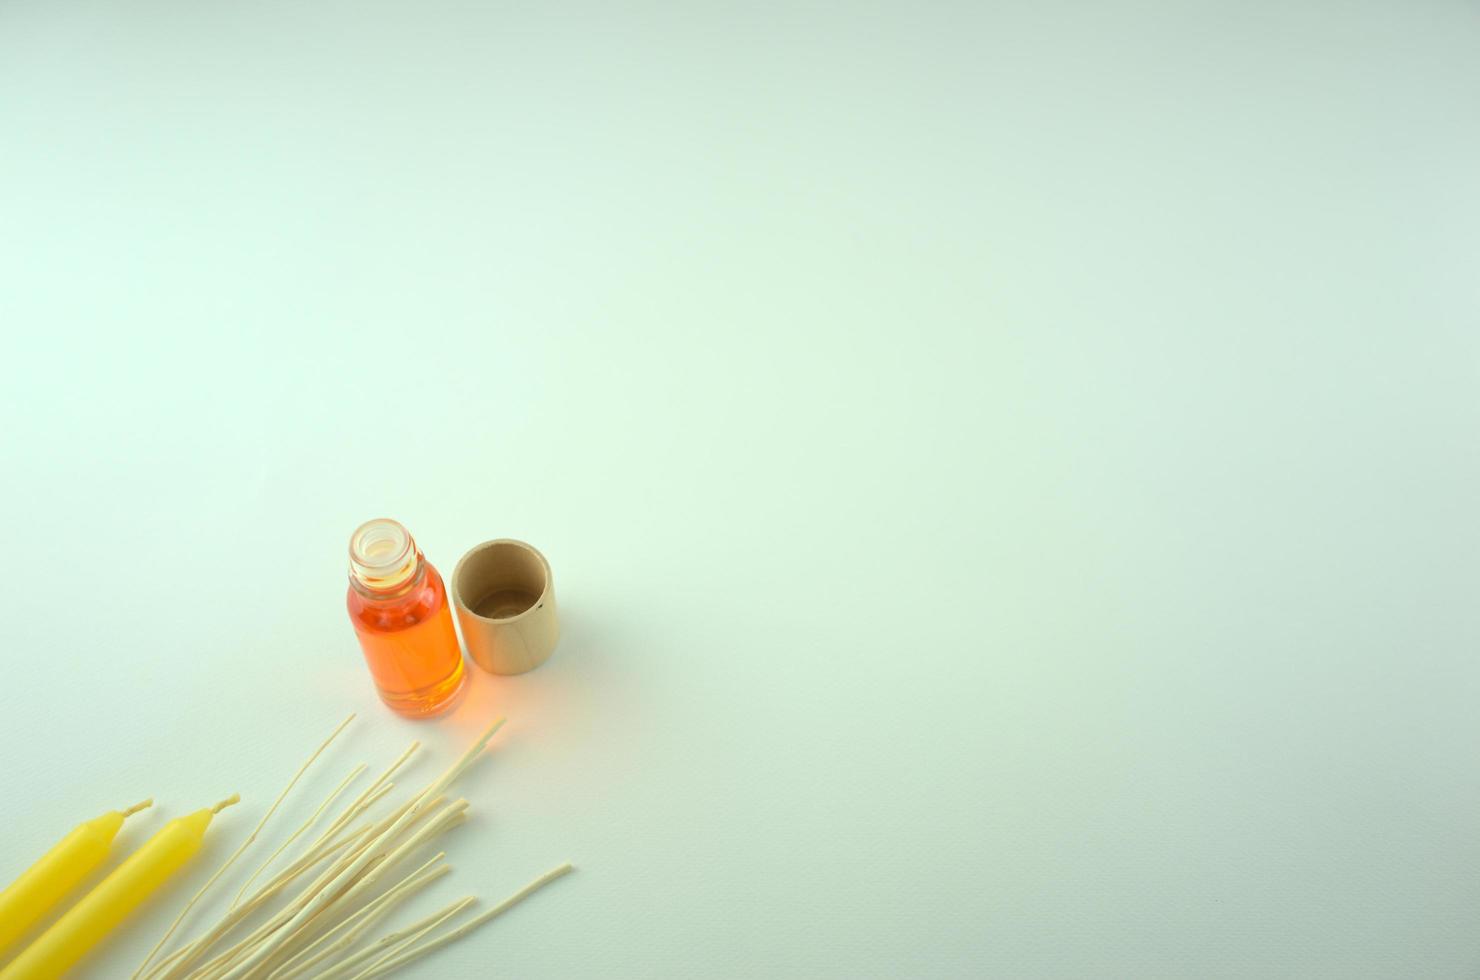 huile parfumée orange dans une bouteille avec des bougies jaunes et des bâtons en bois photo